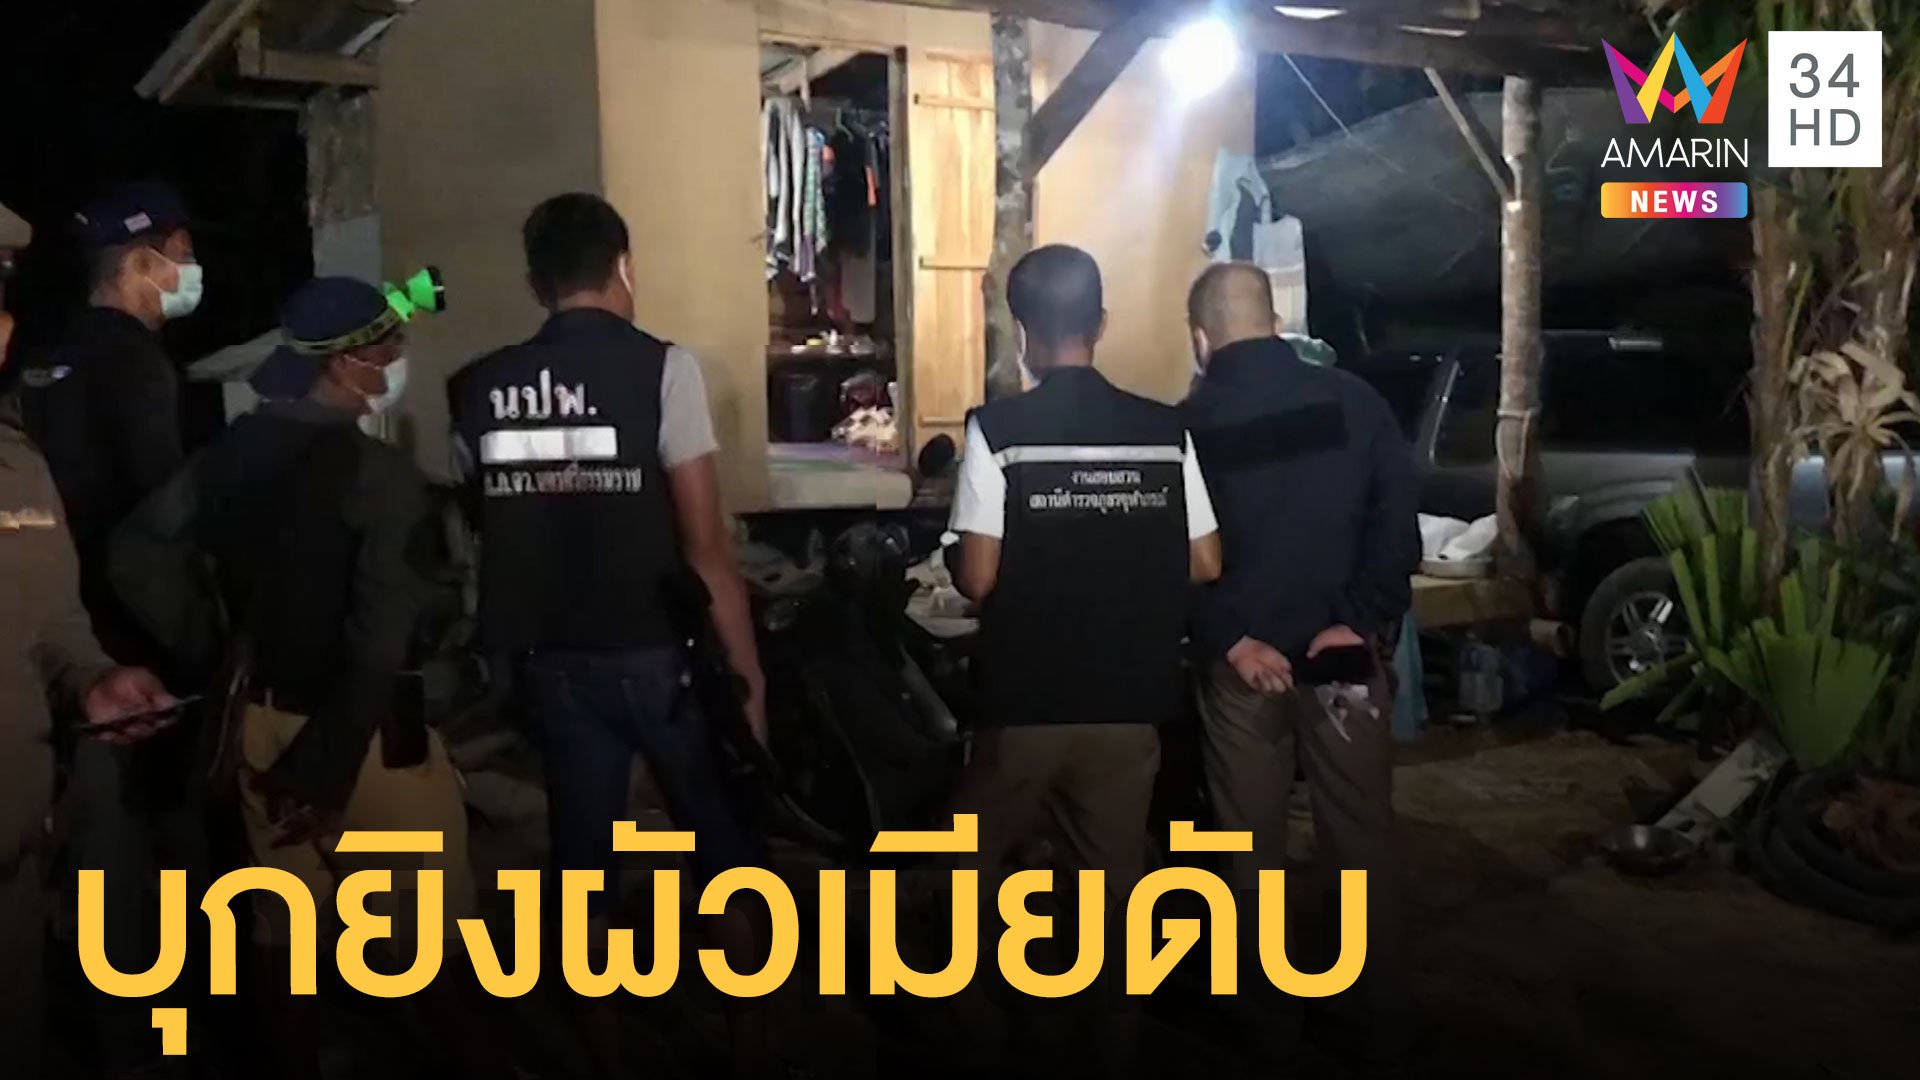 2 ศพผัวเมียถูกยิงดับคาบ้าน ตร.ปูพรมล่ามือปืน | ข่าวเที่ยงอมรินทร์ | 6 ก.ย. 64 | AMARIN TVHD34